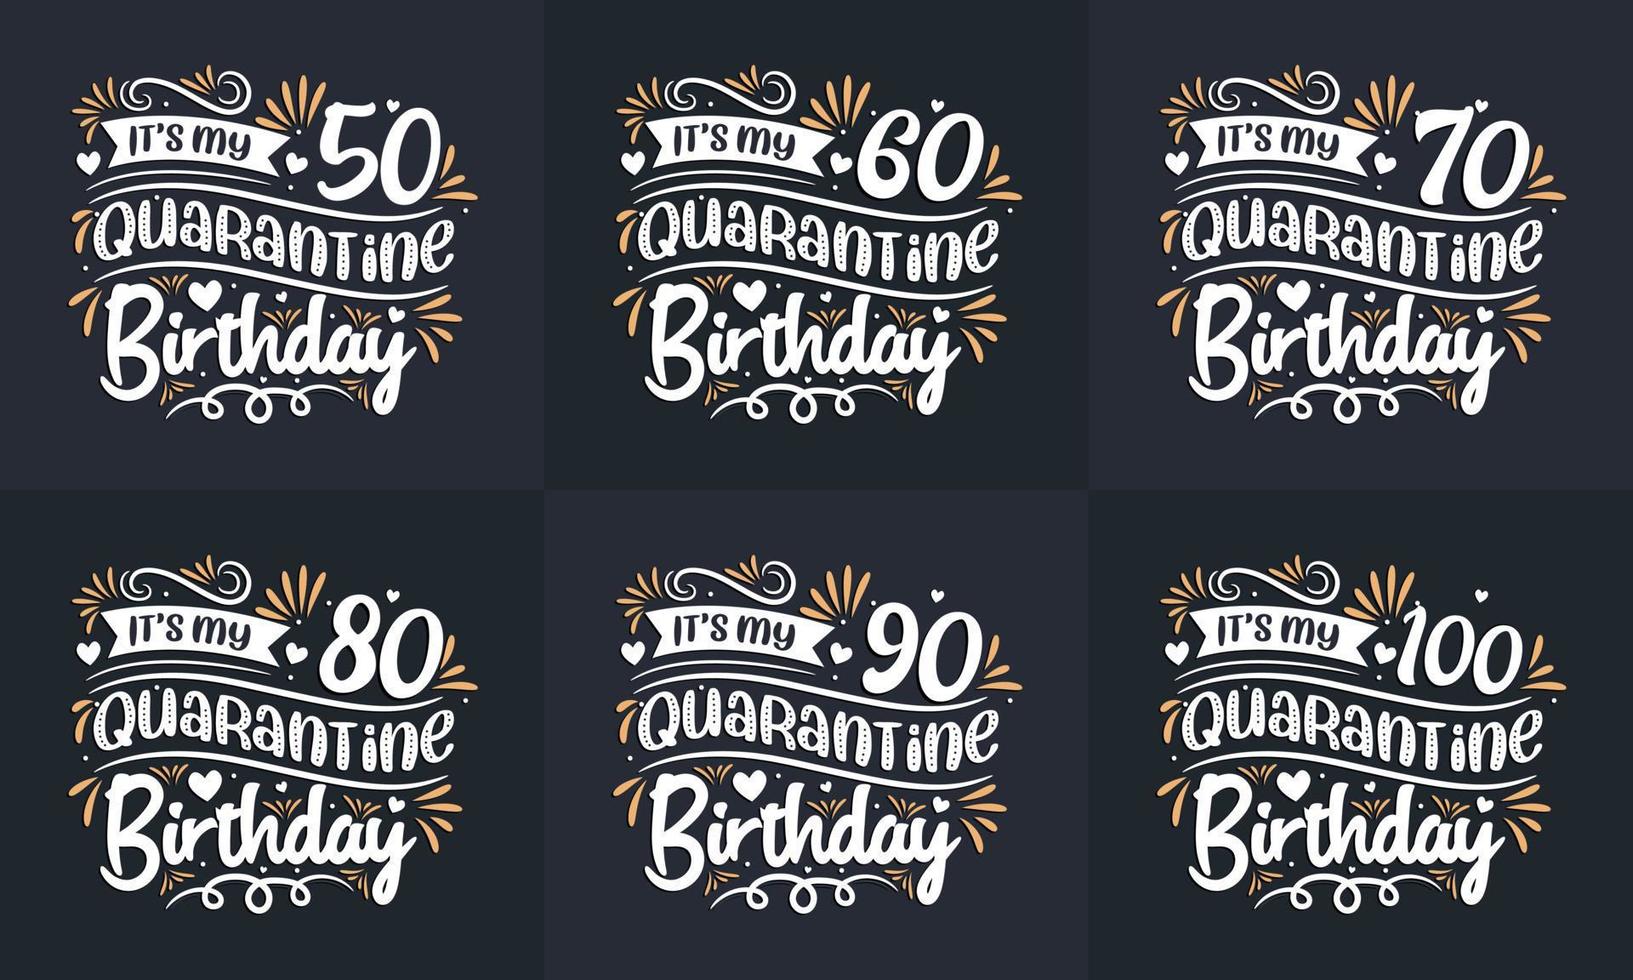 karantän födelsedag design set. karantän födelsedag firande typografi citat design bunt. det är min 50, 60, 70, 80, 90, 100 karantänfödelsedag vektor